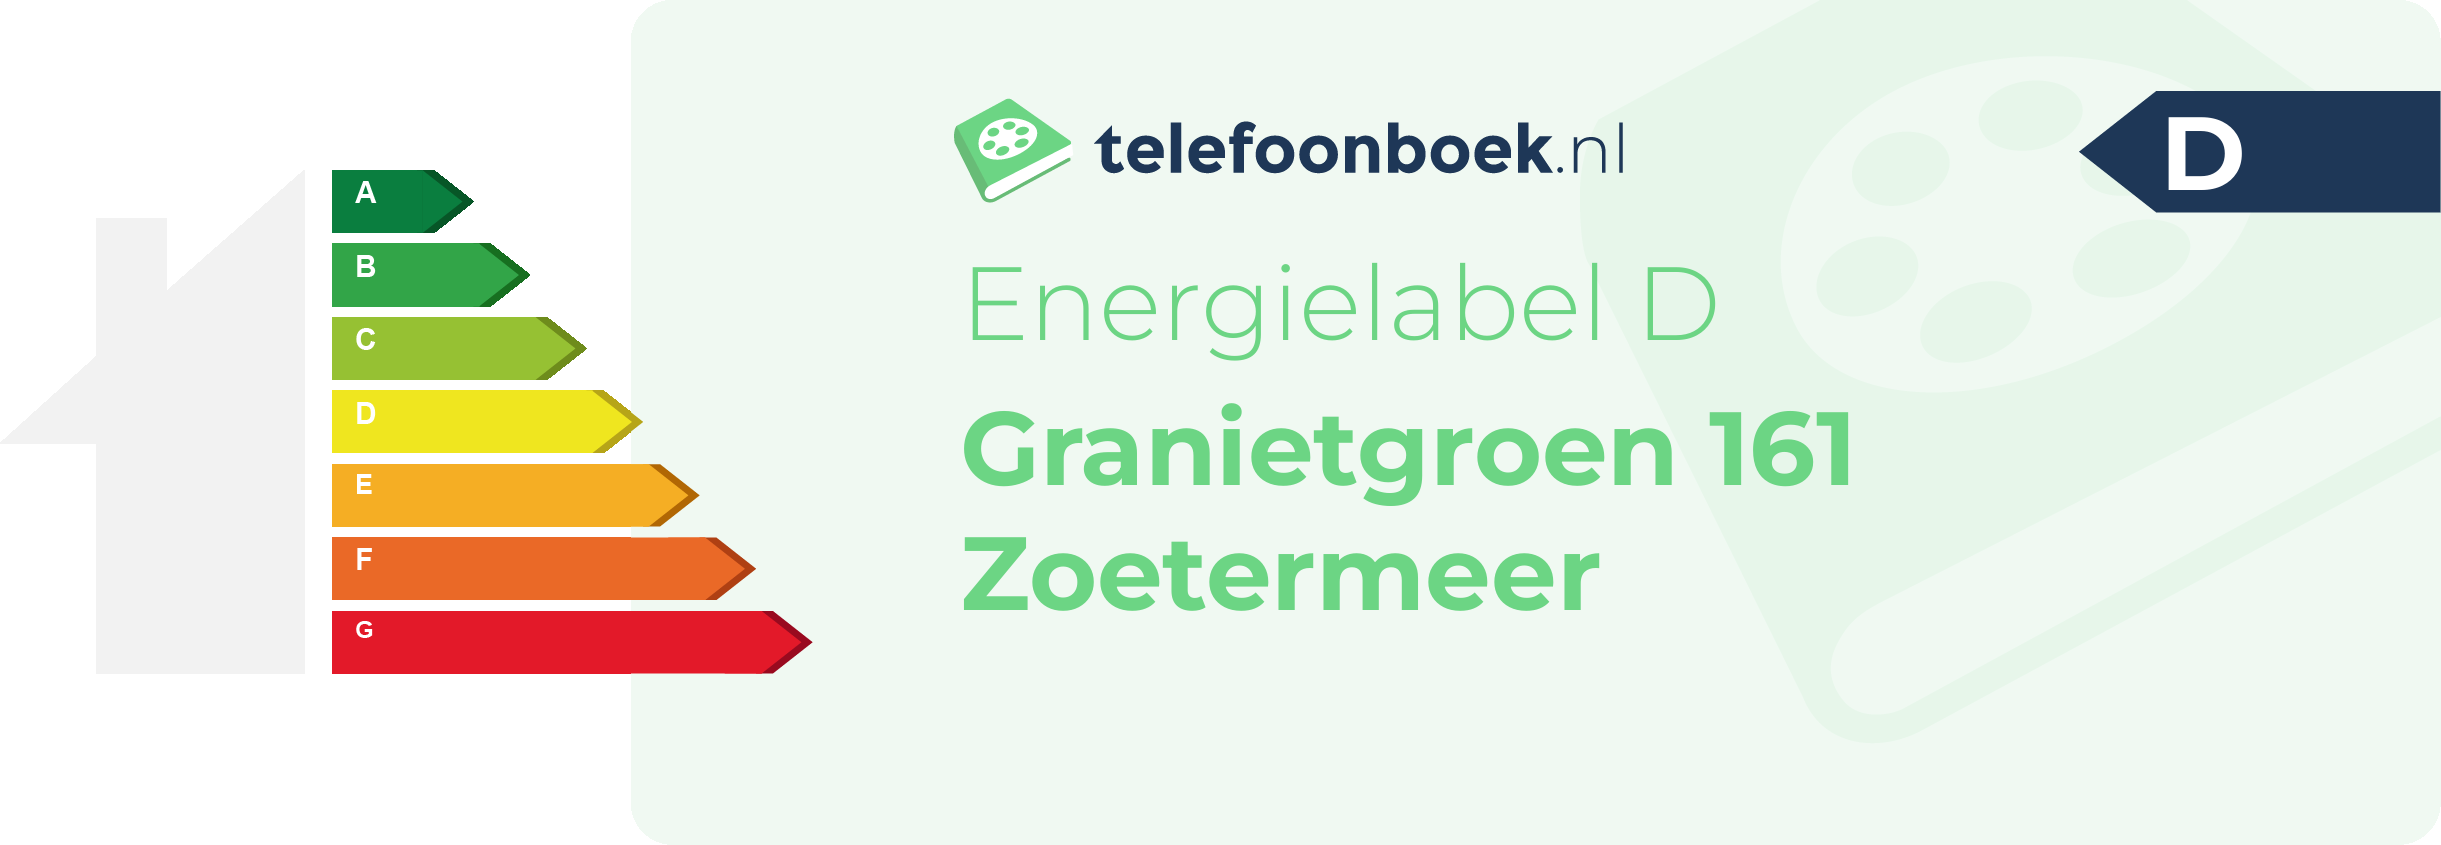 Energielabel Granietgroen 161 Zoetermeer